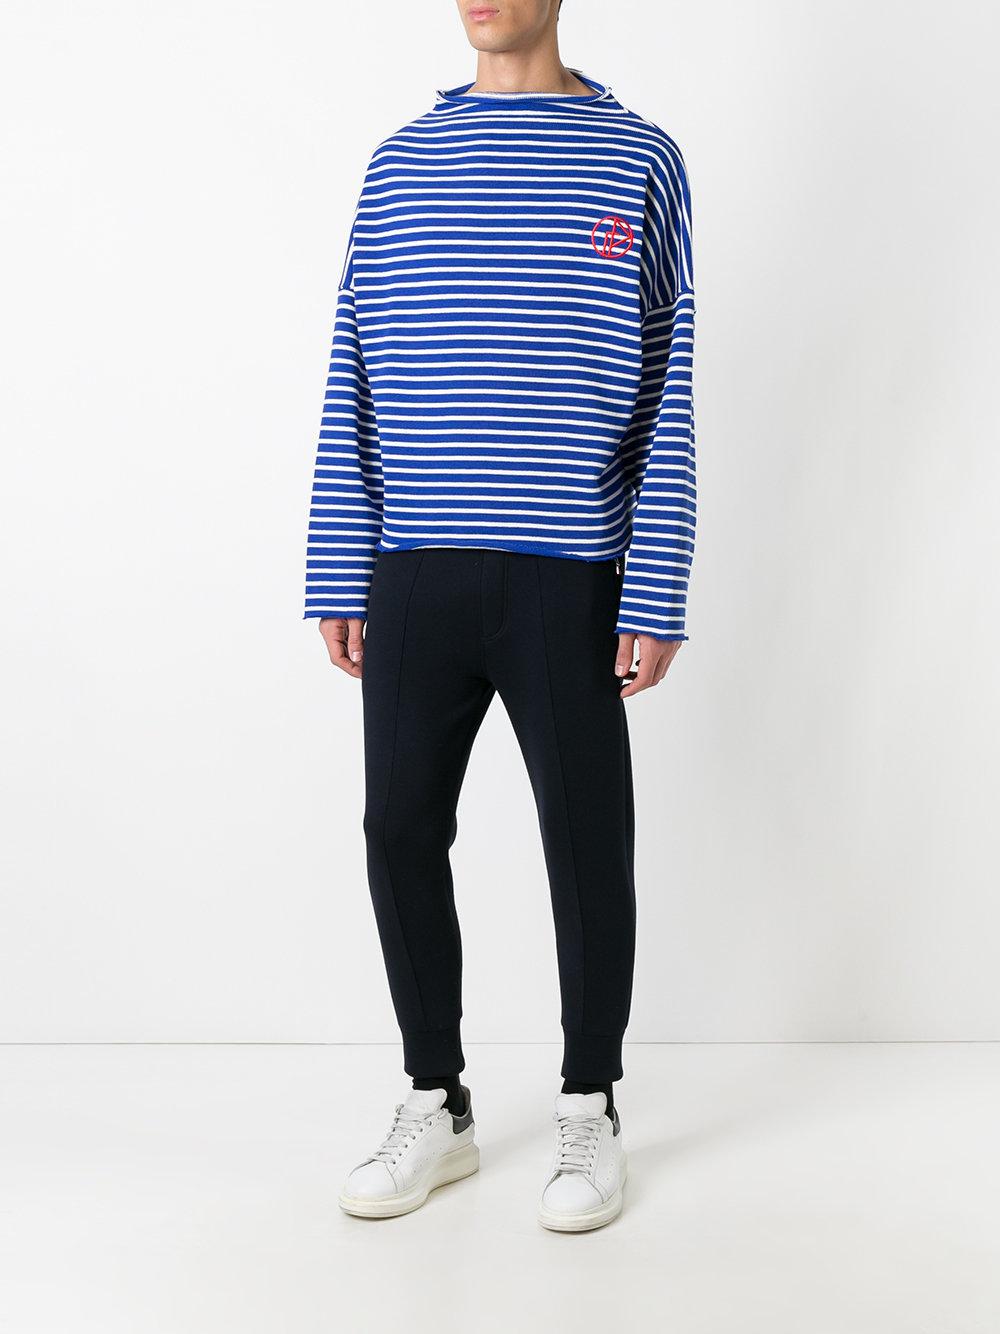 Gosha Rubchinskiy Striped Sweater In Blue/white for Men | Lyst